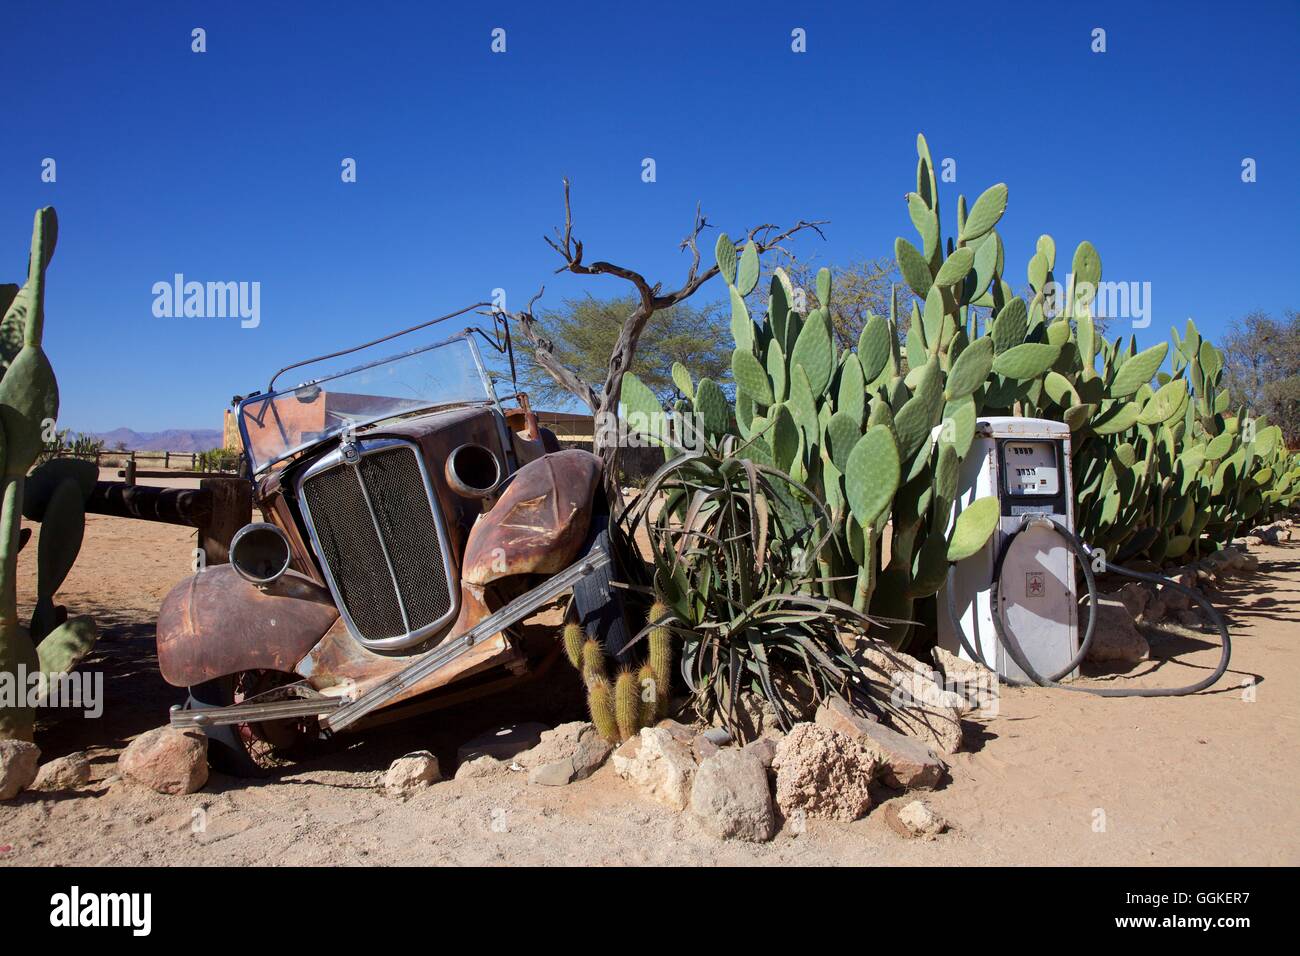 Voiture Rouillée Comme Décoration De Jardin Entre Les Cactus En Namibie  Image éditorial - Image du abandonné, arbres: 121856755